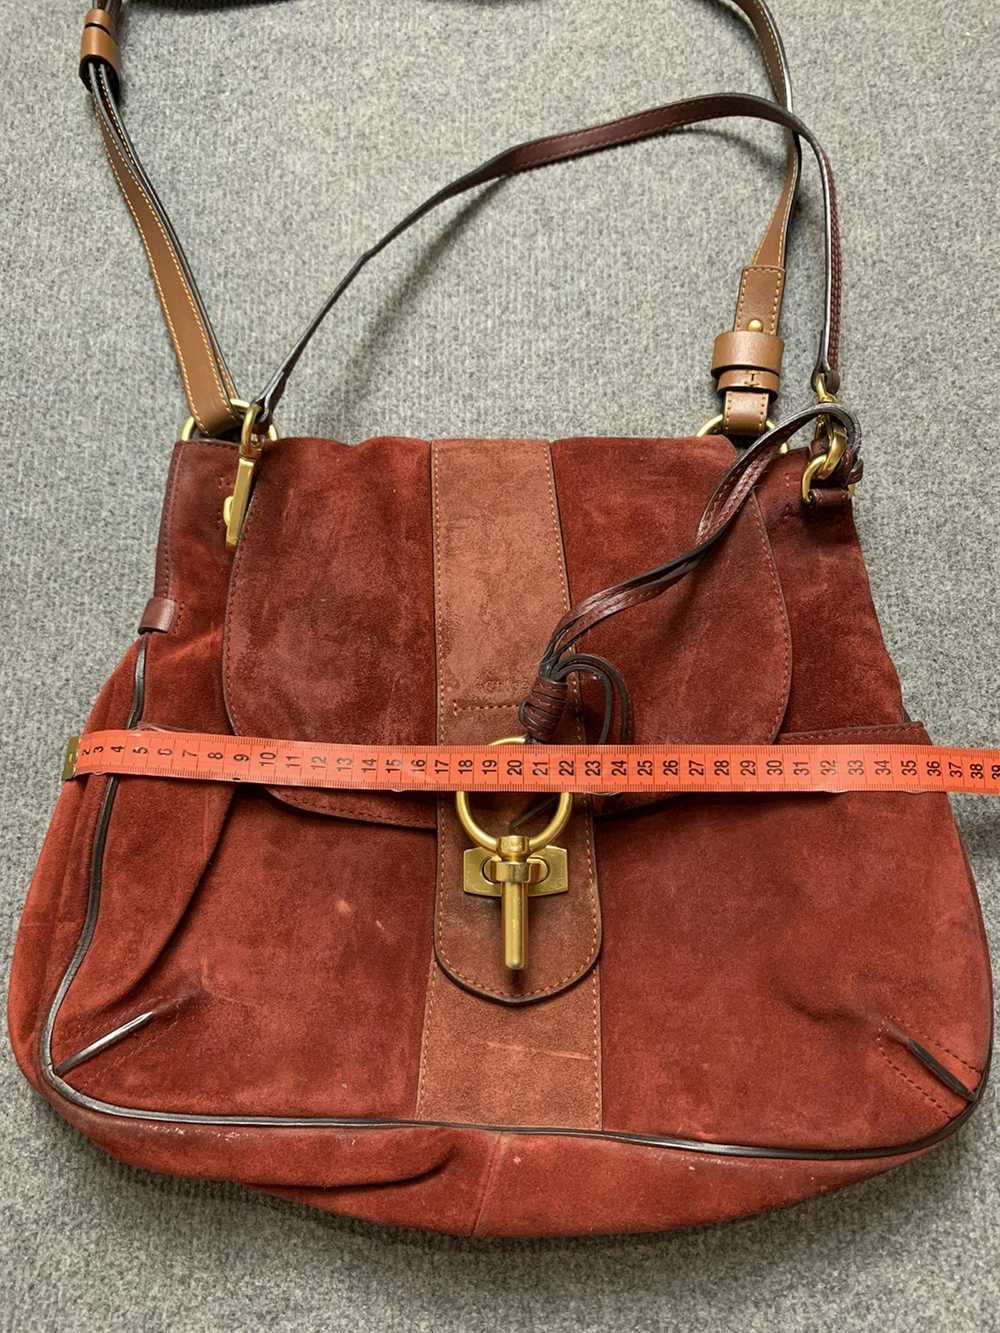 Chloe × Designer × Vintage Chloe leather suede bag - image 11